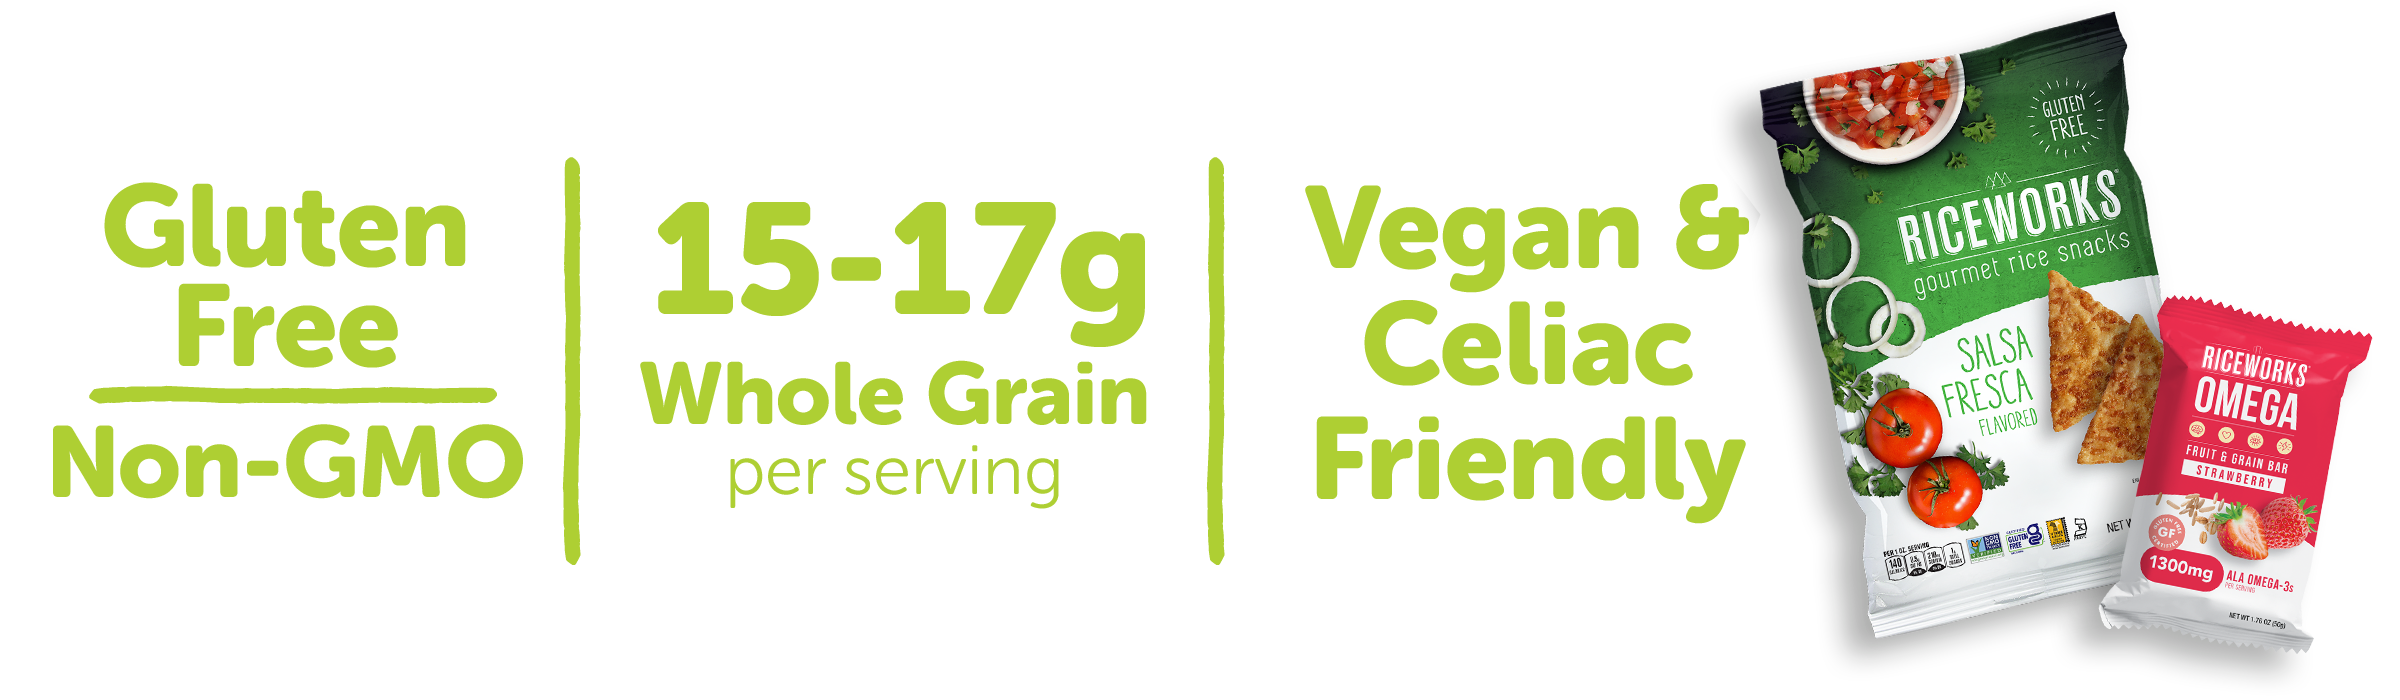 Gluten Free, Non-GMO, 15-17 g Whole Grain per serving, Vegan and Celiac friendly